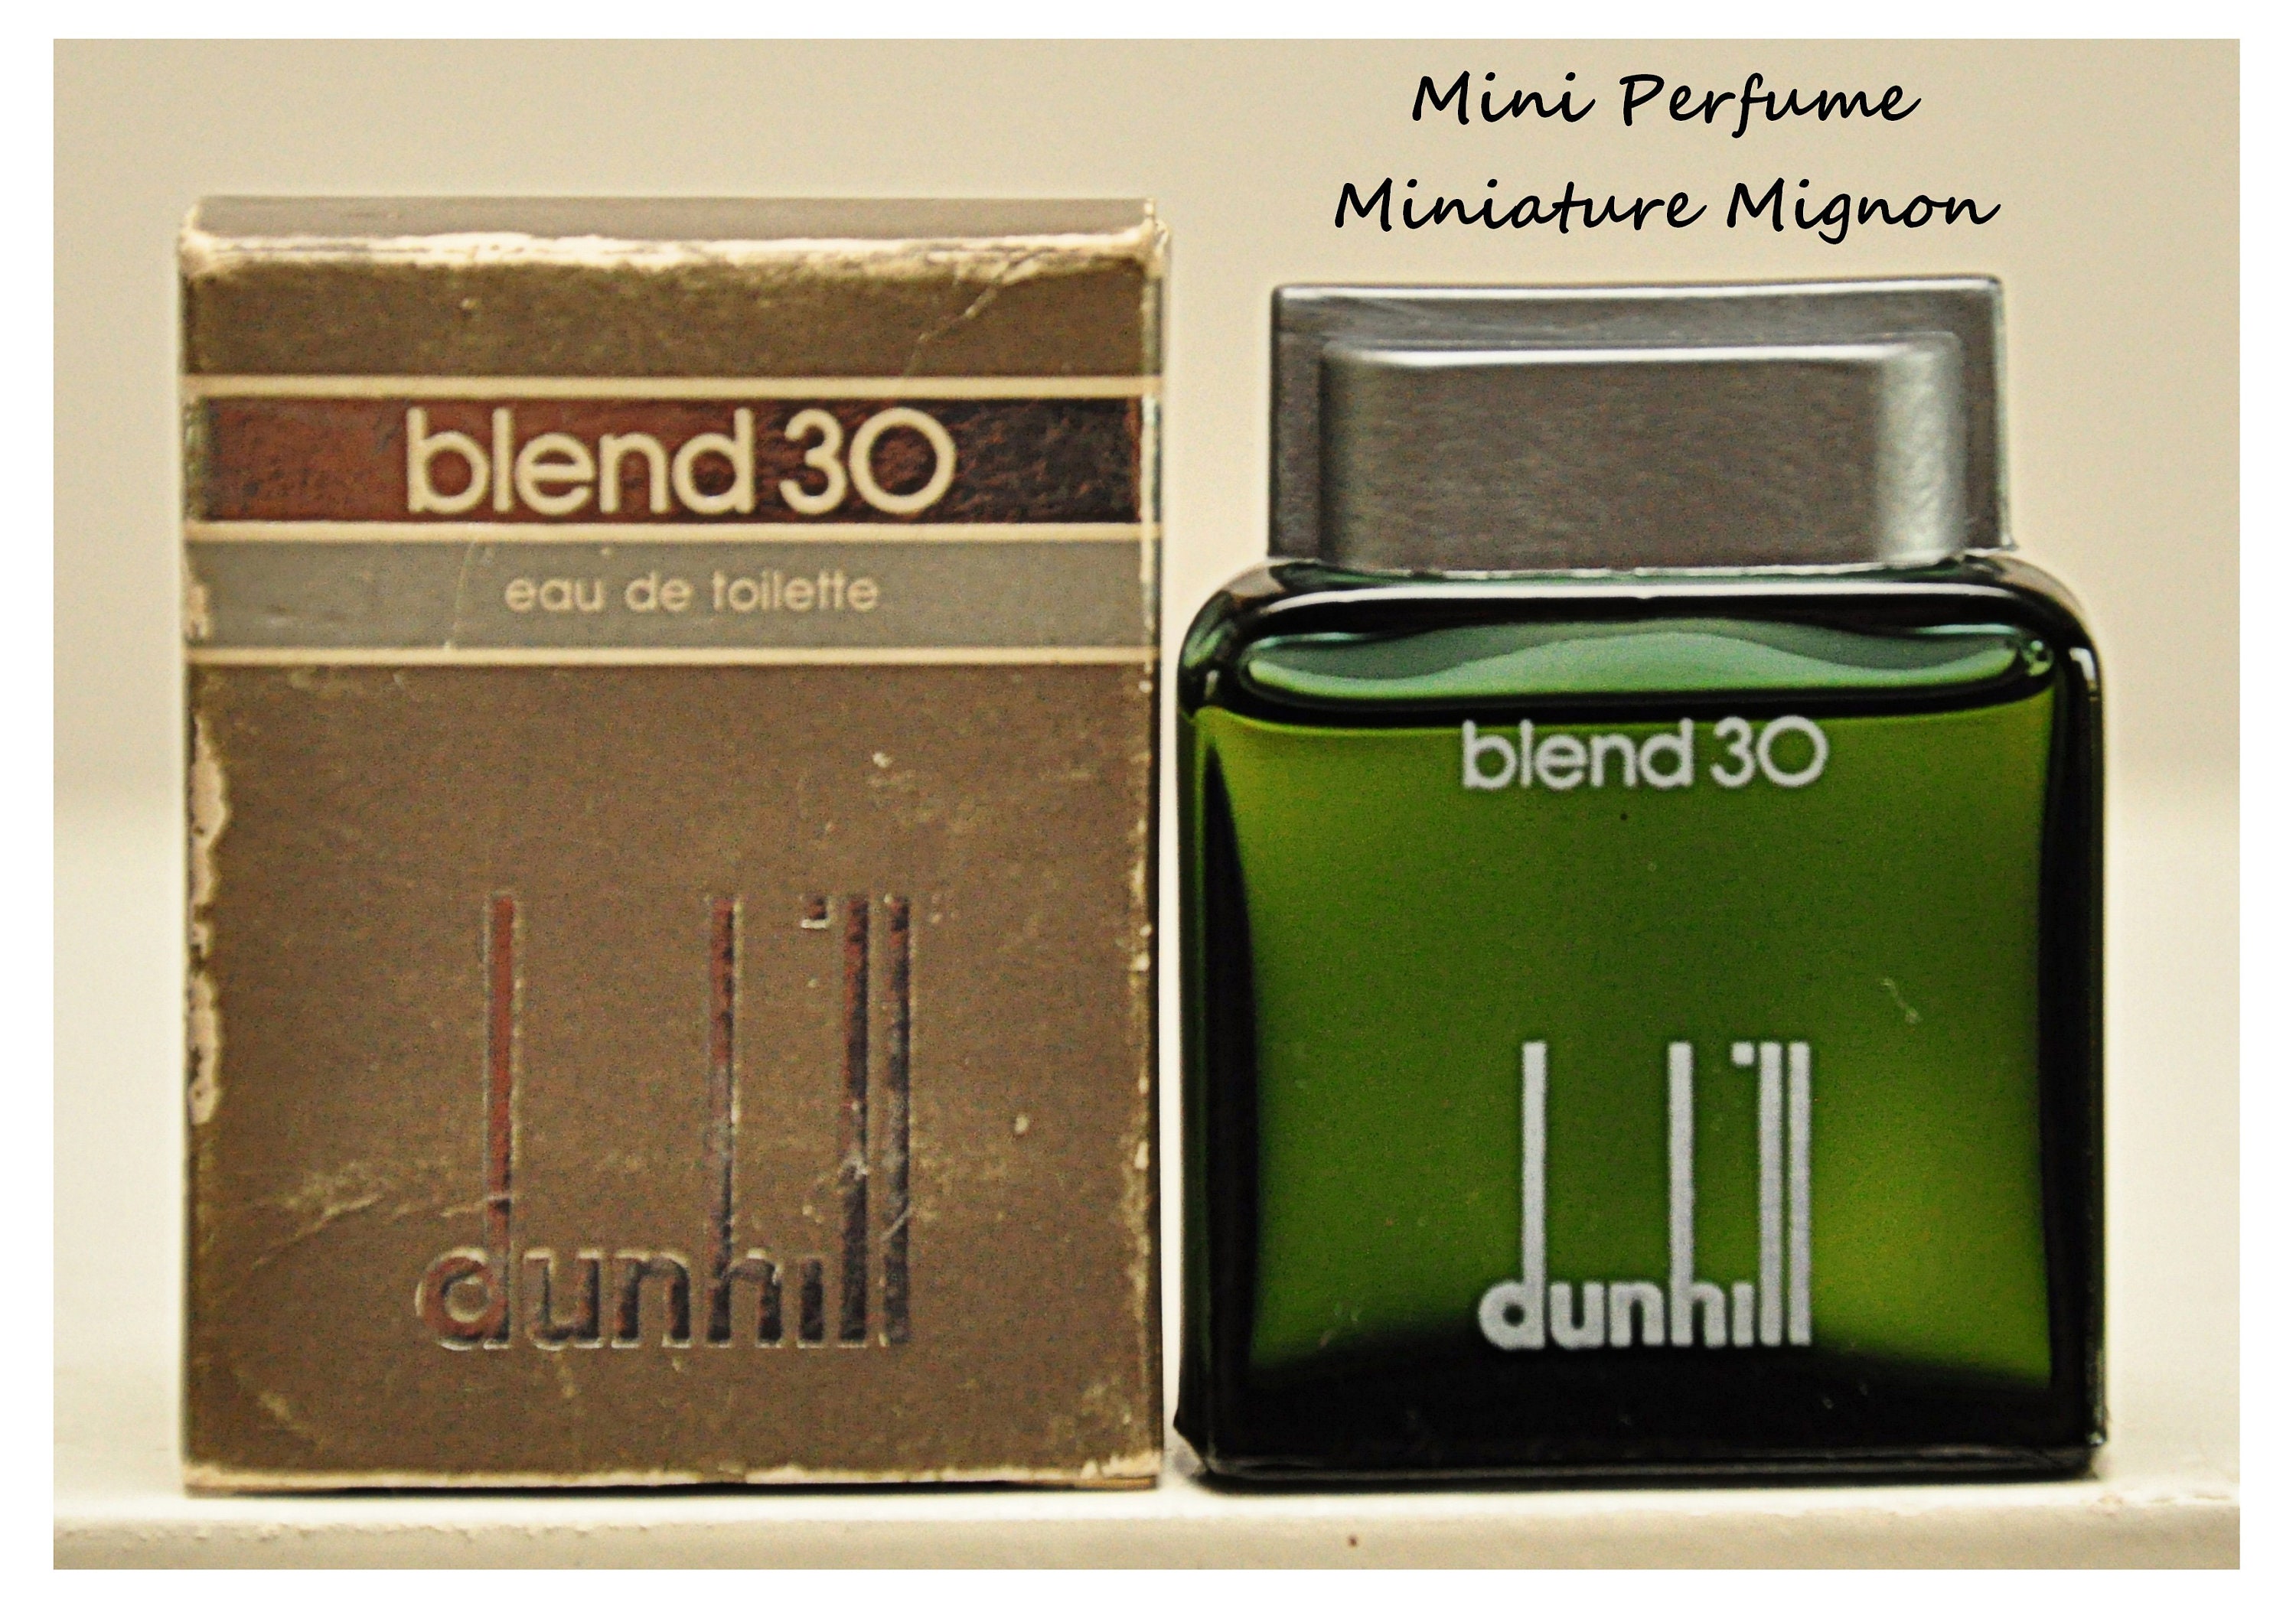 Alfred Dunhill Blend 30 Eau De Toilette Edt 5Ml 0.17 Fl. Oz. Miniature Splash Non Spray Perfume For Man Rare Vintage 1978